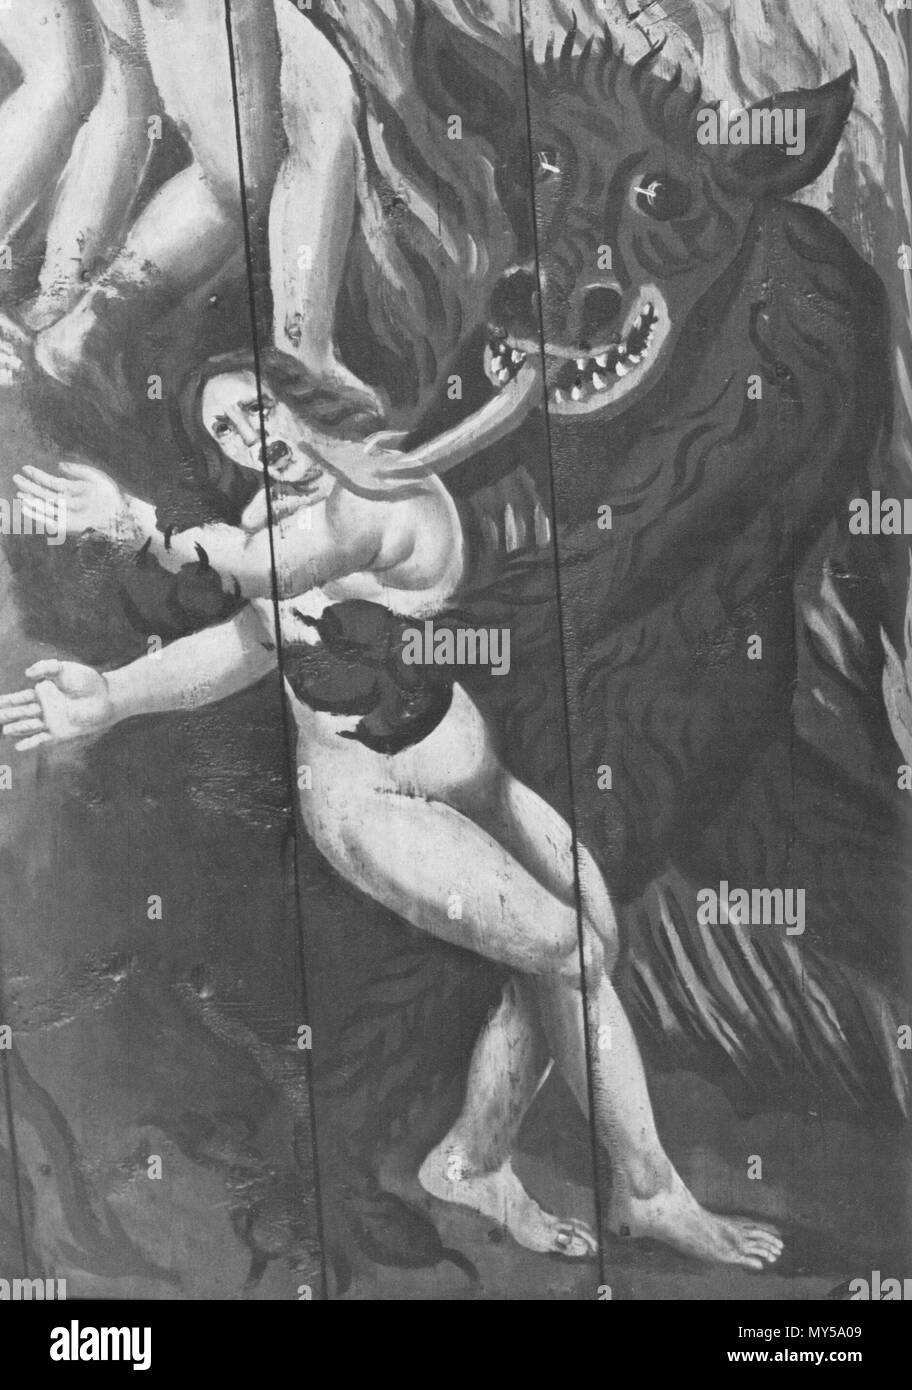 . Englisch: Der Teufel fängt eine Frau. Detail der Wandmalerei in der Kirche von Trosa, Schweden. Mittelalter.. Unbekannt 139 Teufel nimmt Frau Stockfoto